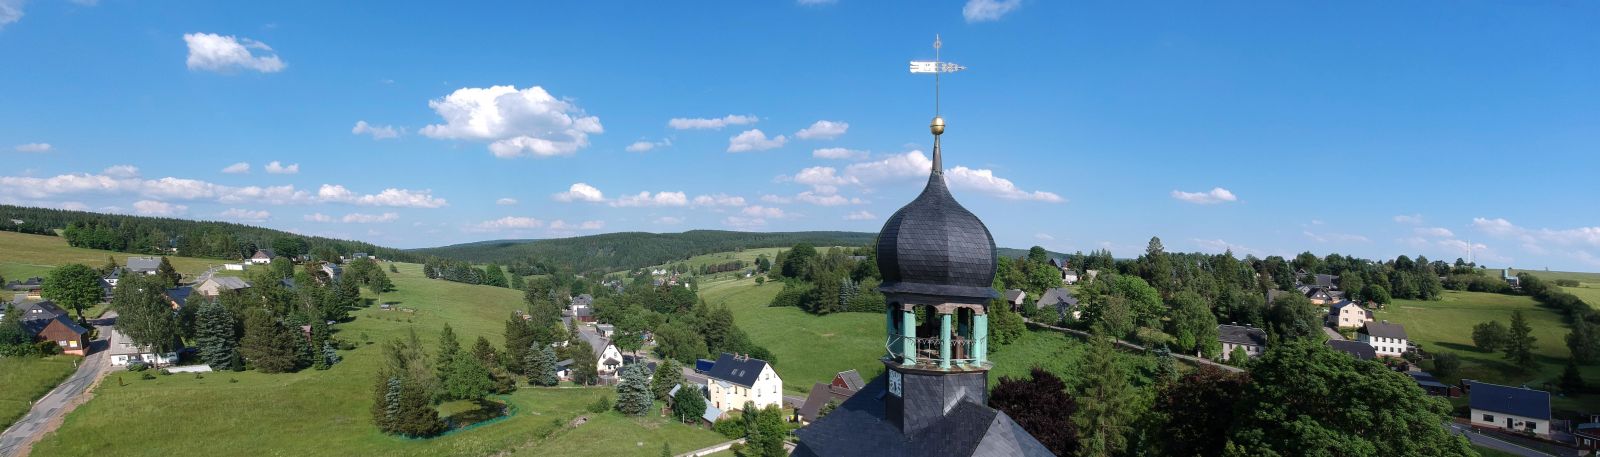 Blick auf Kirchturm von Rübenau